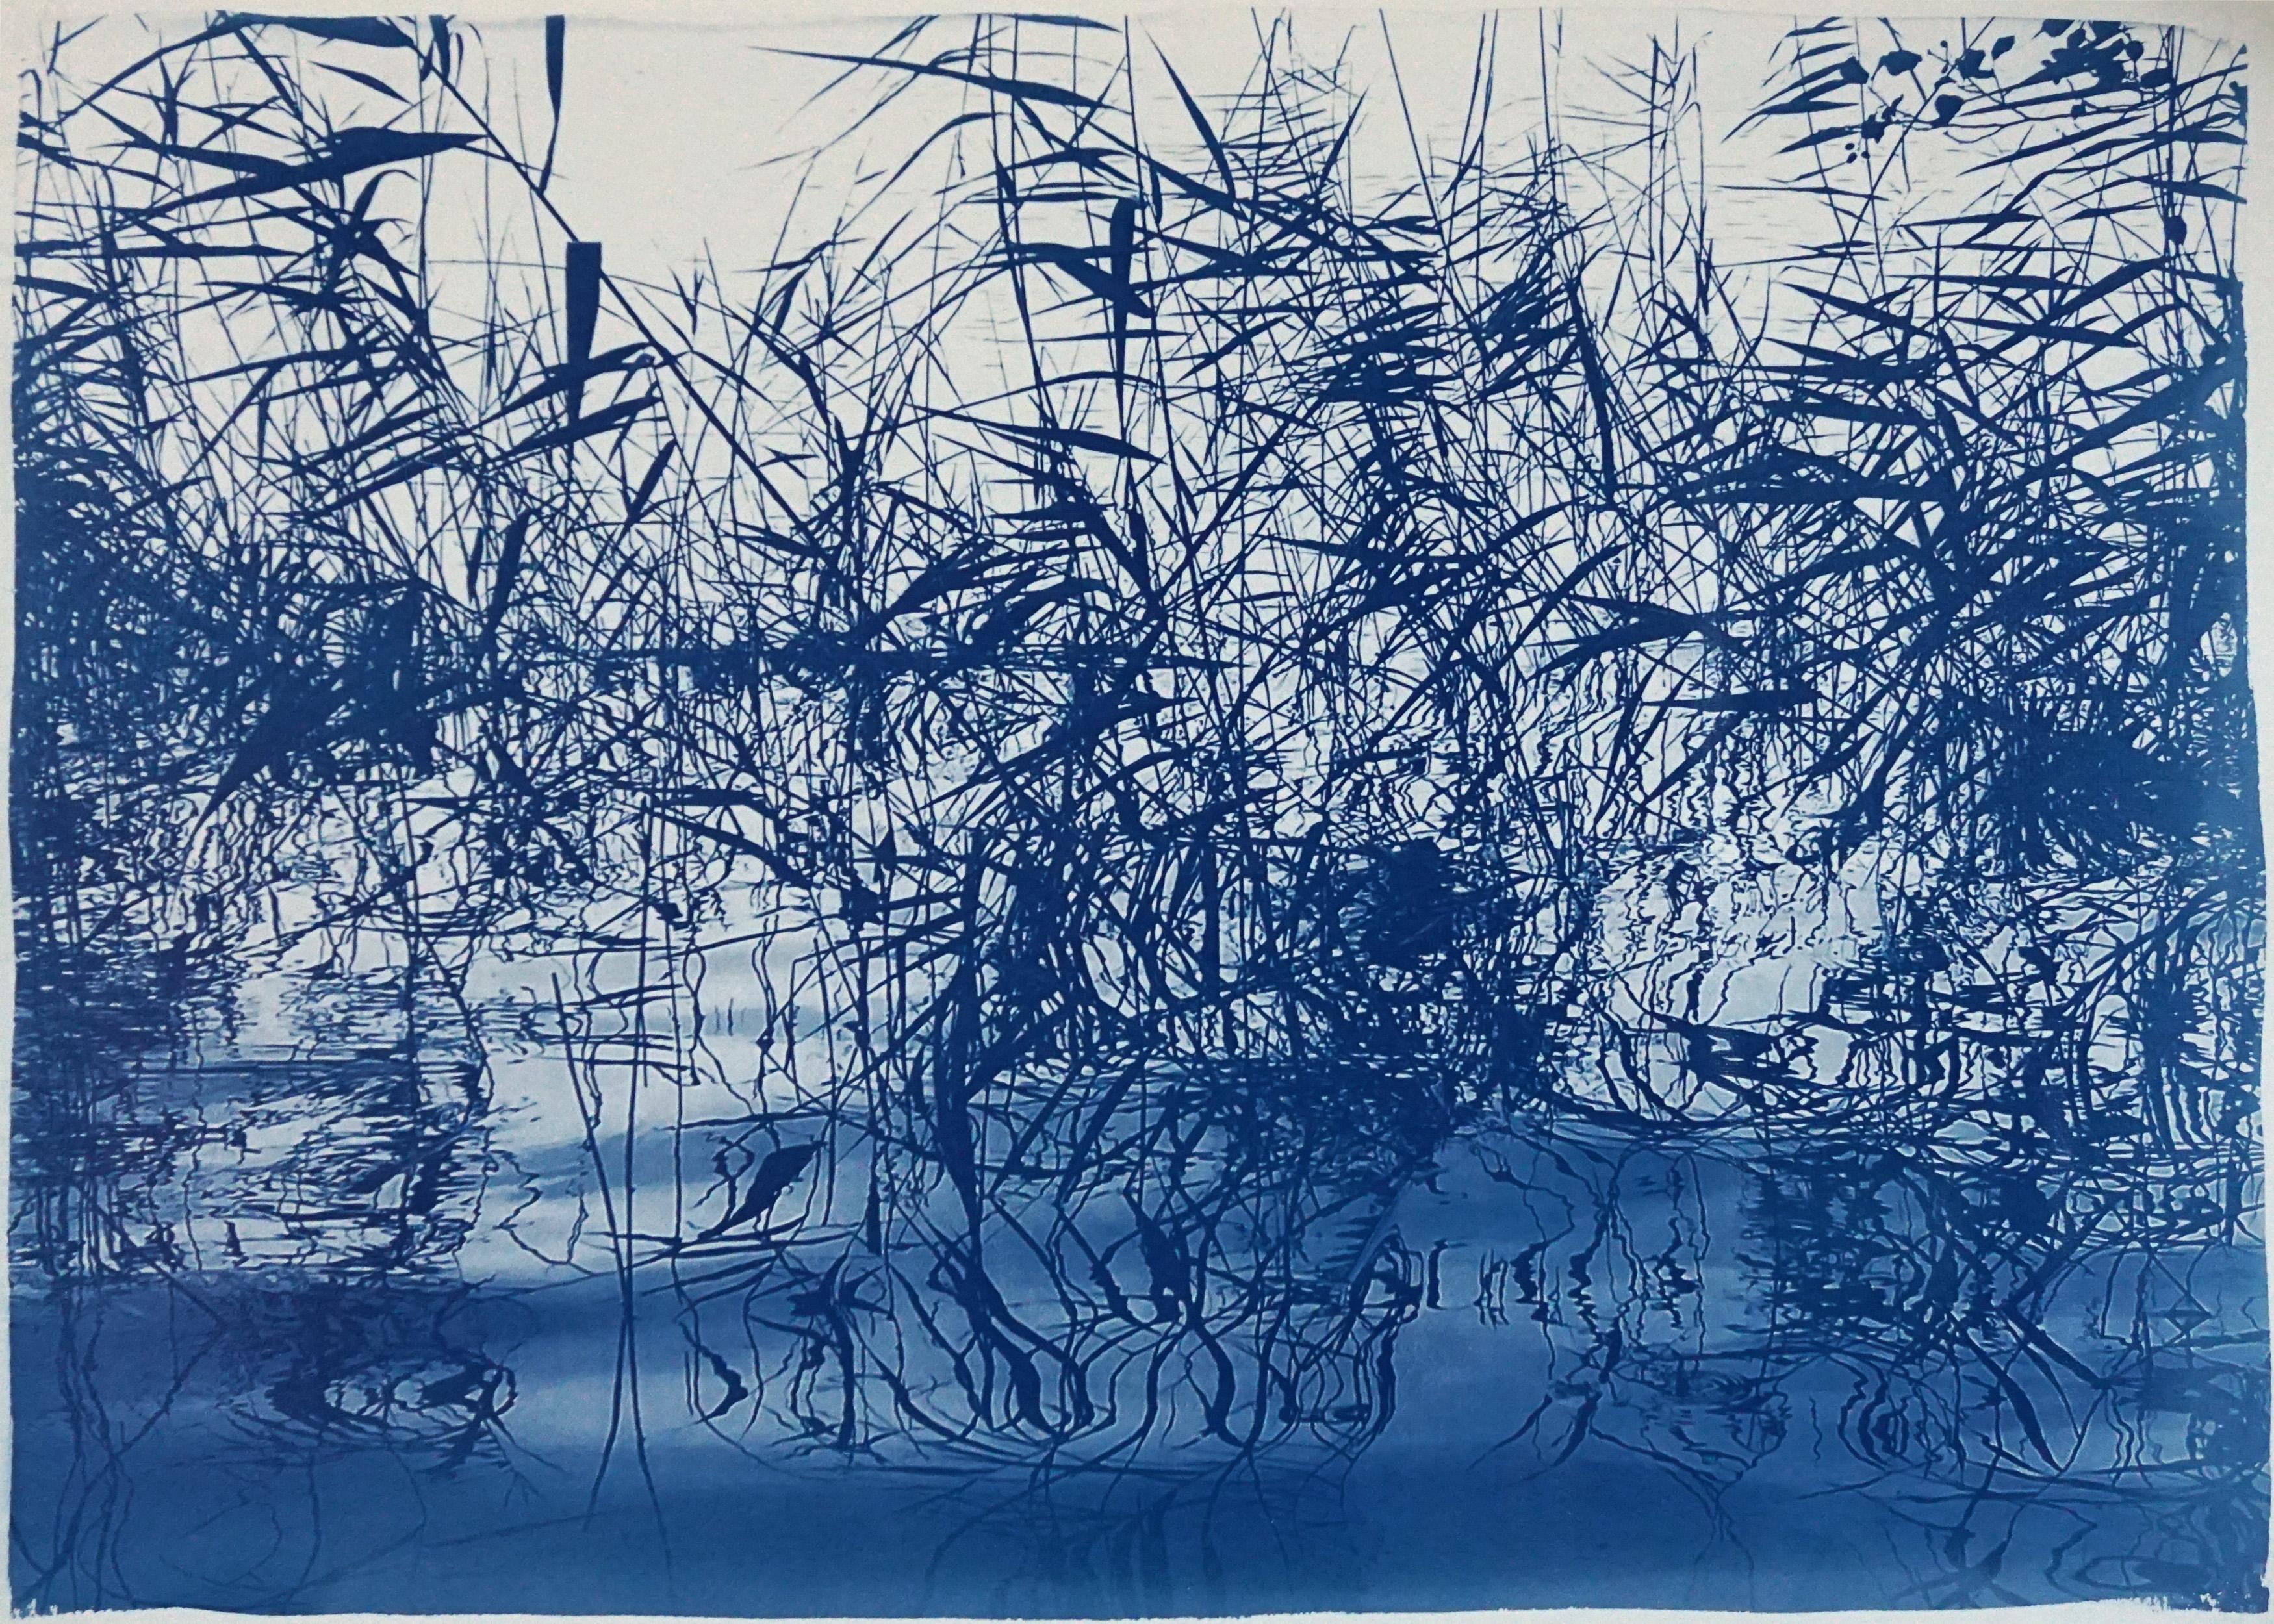 Kind of Cyan Landscape Print - Mystic Louisiana Marsh, Cyanotype on Watercolor Paper, 100x70cm, Blue Landscape 